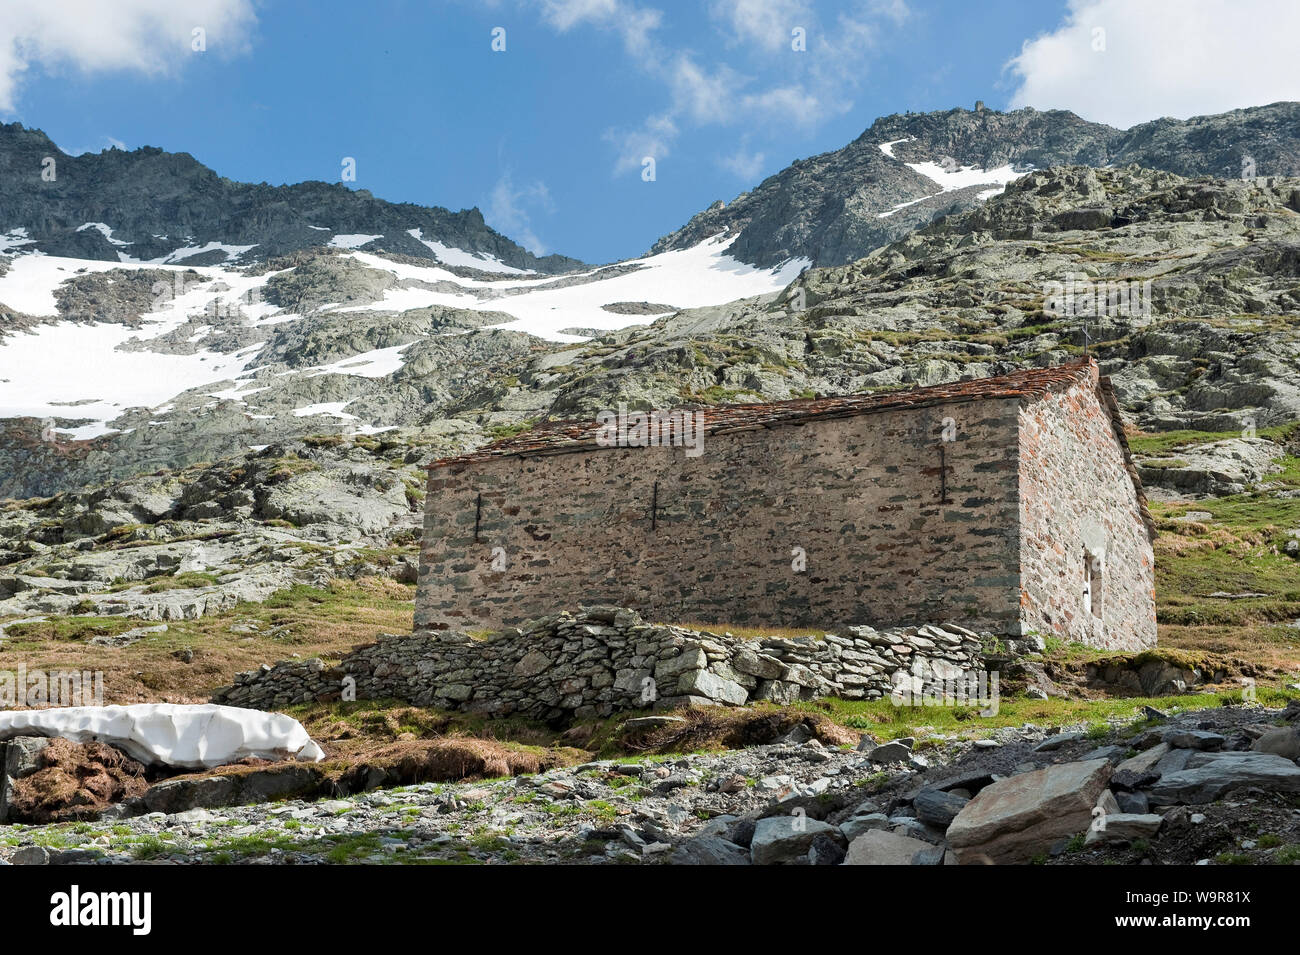 Petite maison en pierre, col de Grand Saint Bernard, grand St Bernard Pass, canton du Valais, Suisse, Europe, Grand-Saint-Bernard Pass Banque D'Images